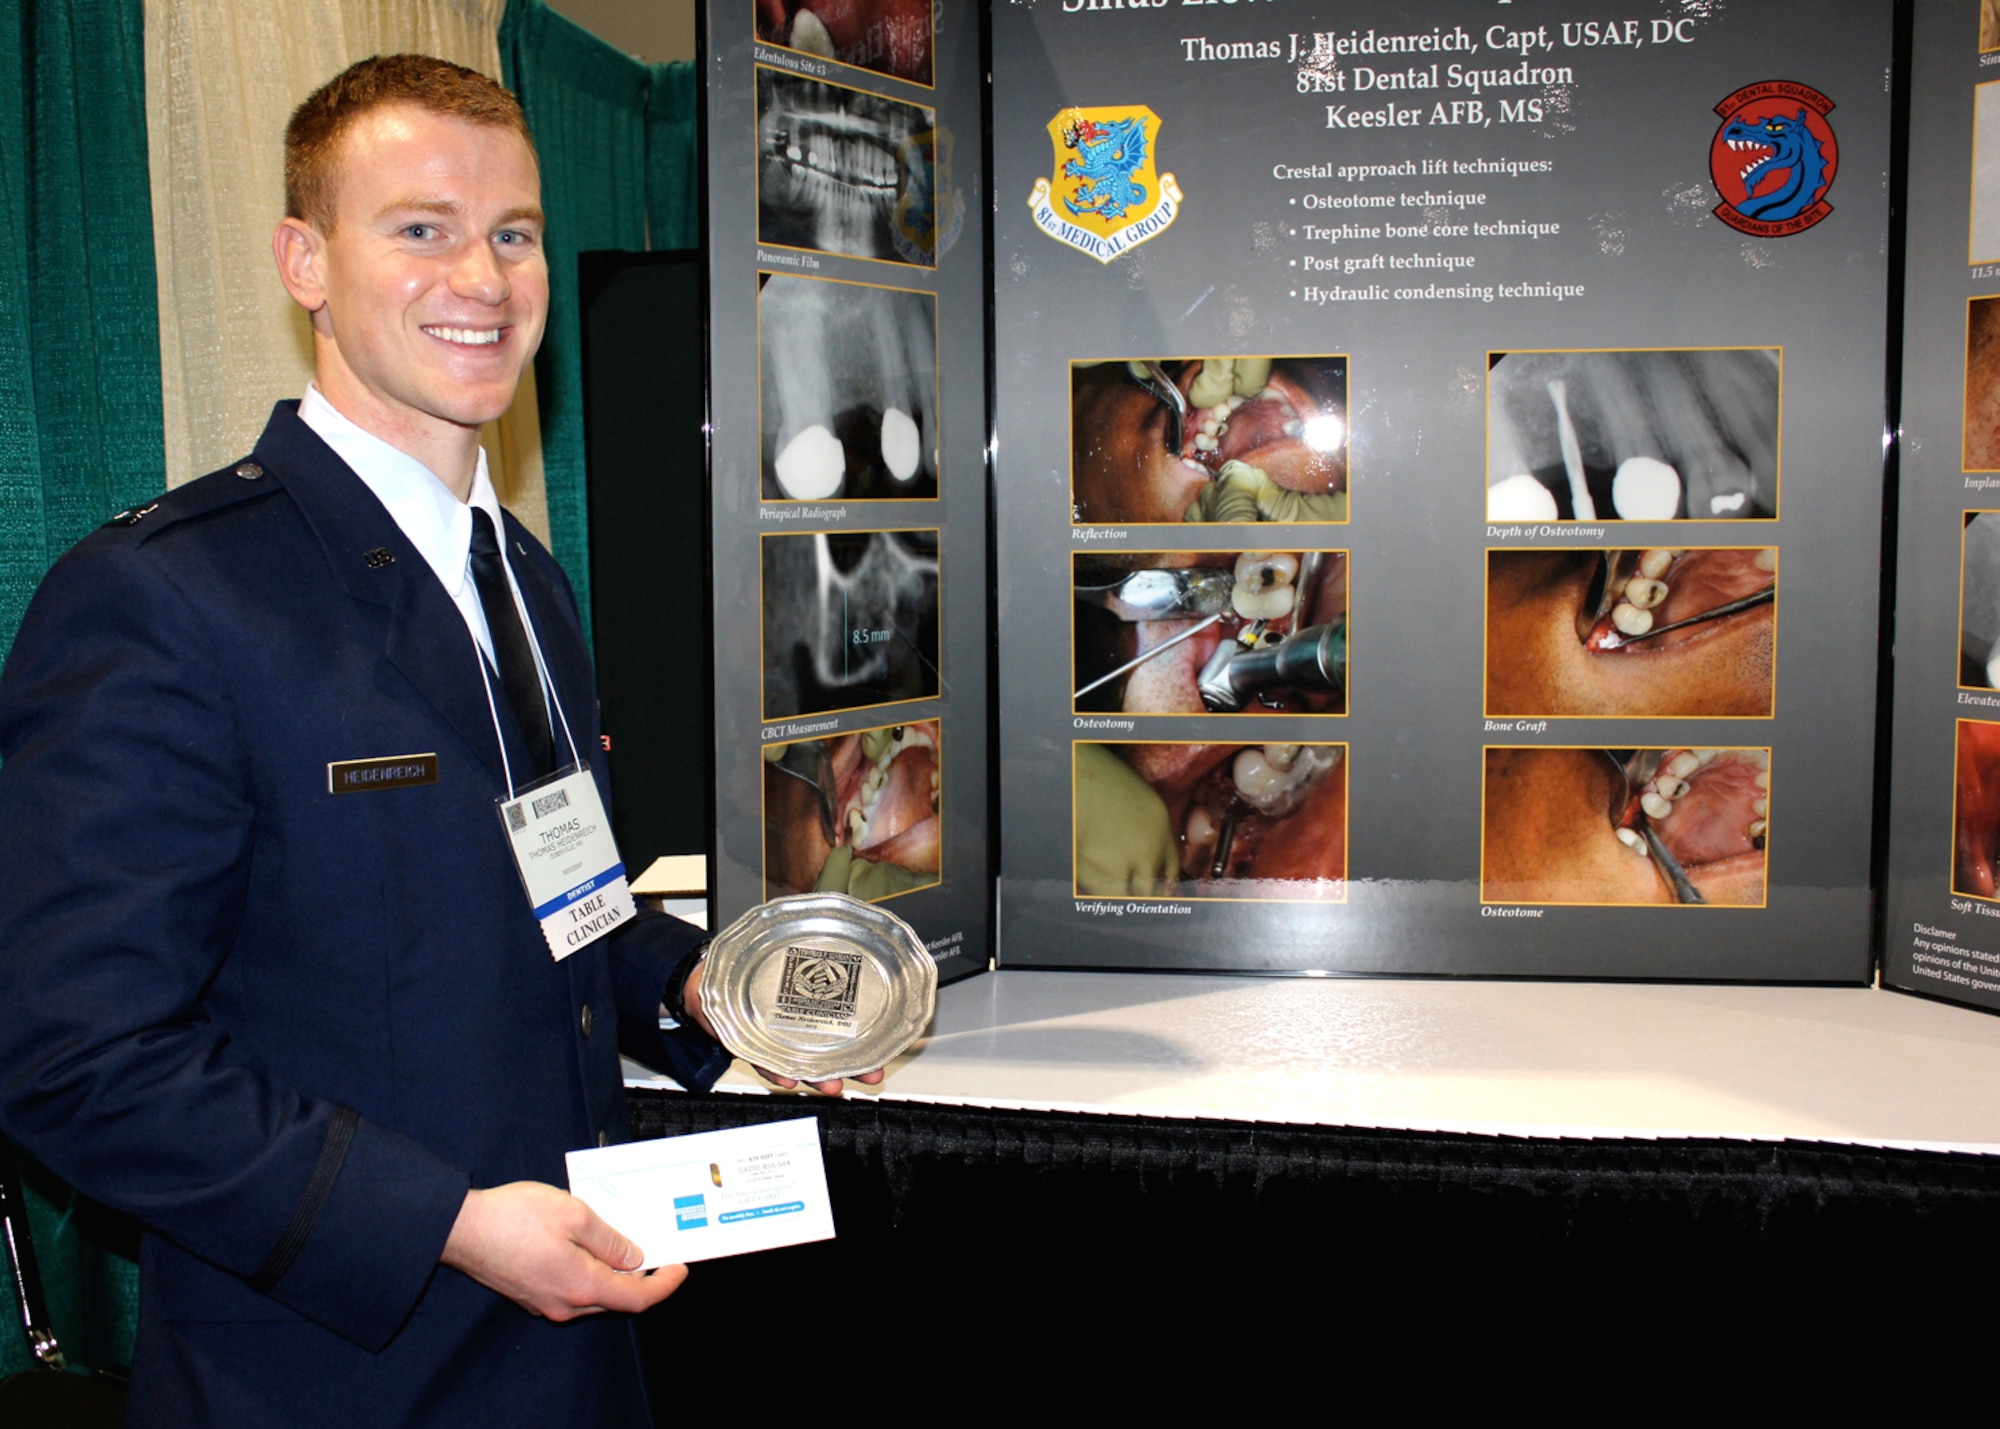 Keesler dentist wins award at 'Hinman' meeting > Air Force Medical